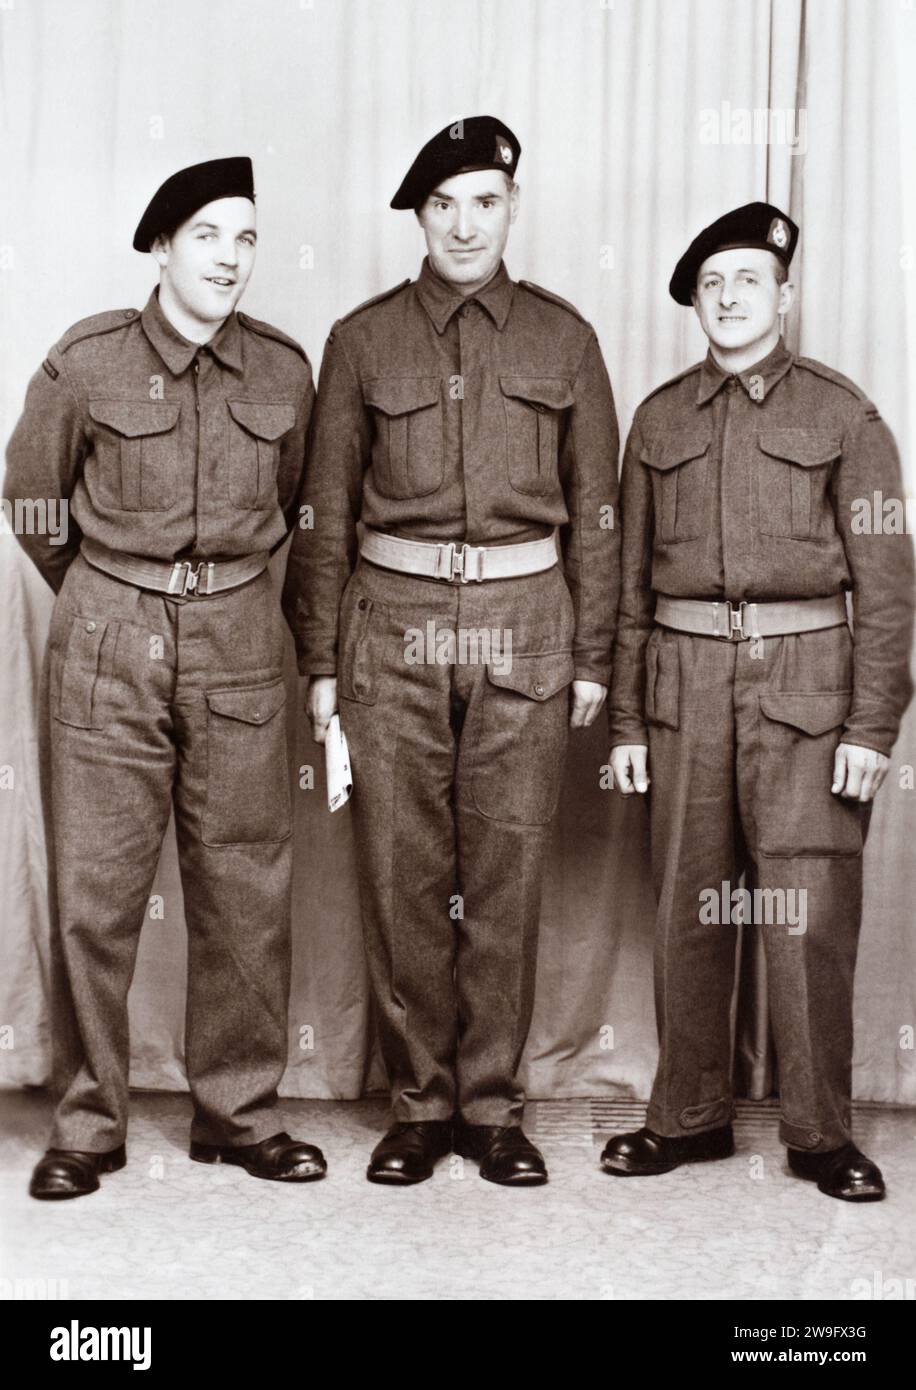 Royal Marines während des Zweiten Weltkriegs. Stockfoto